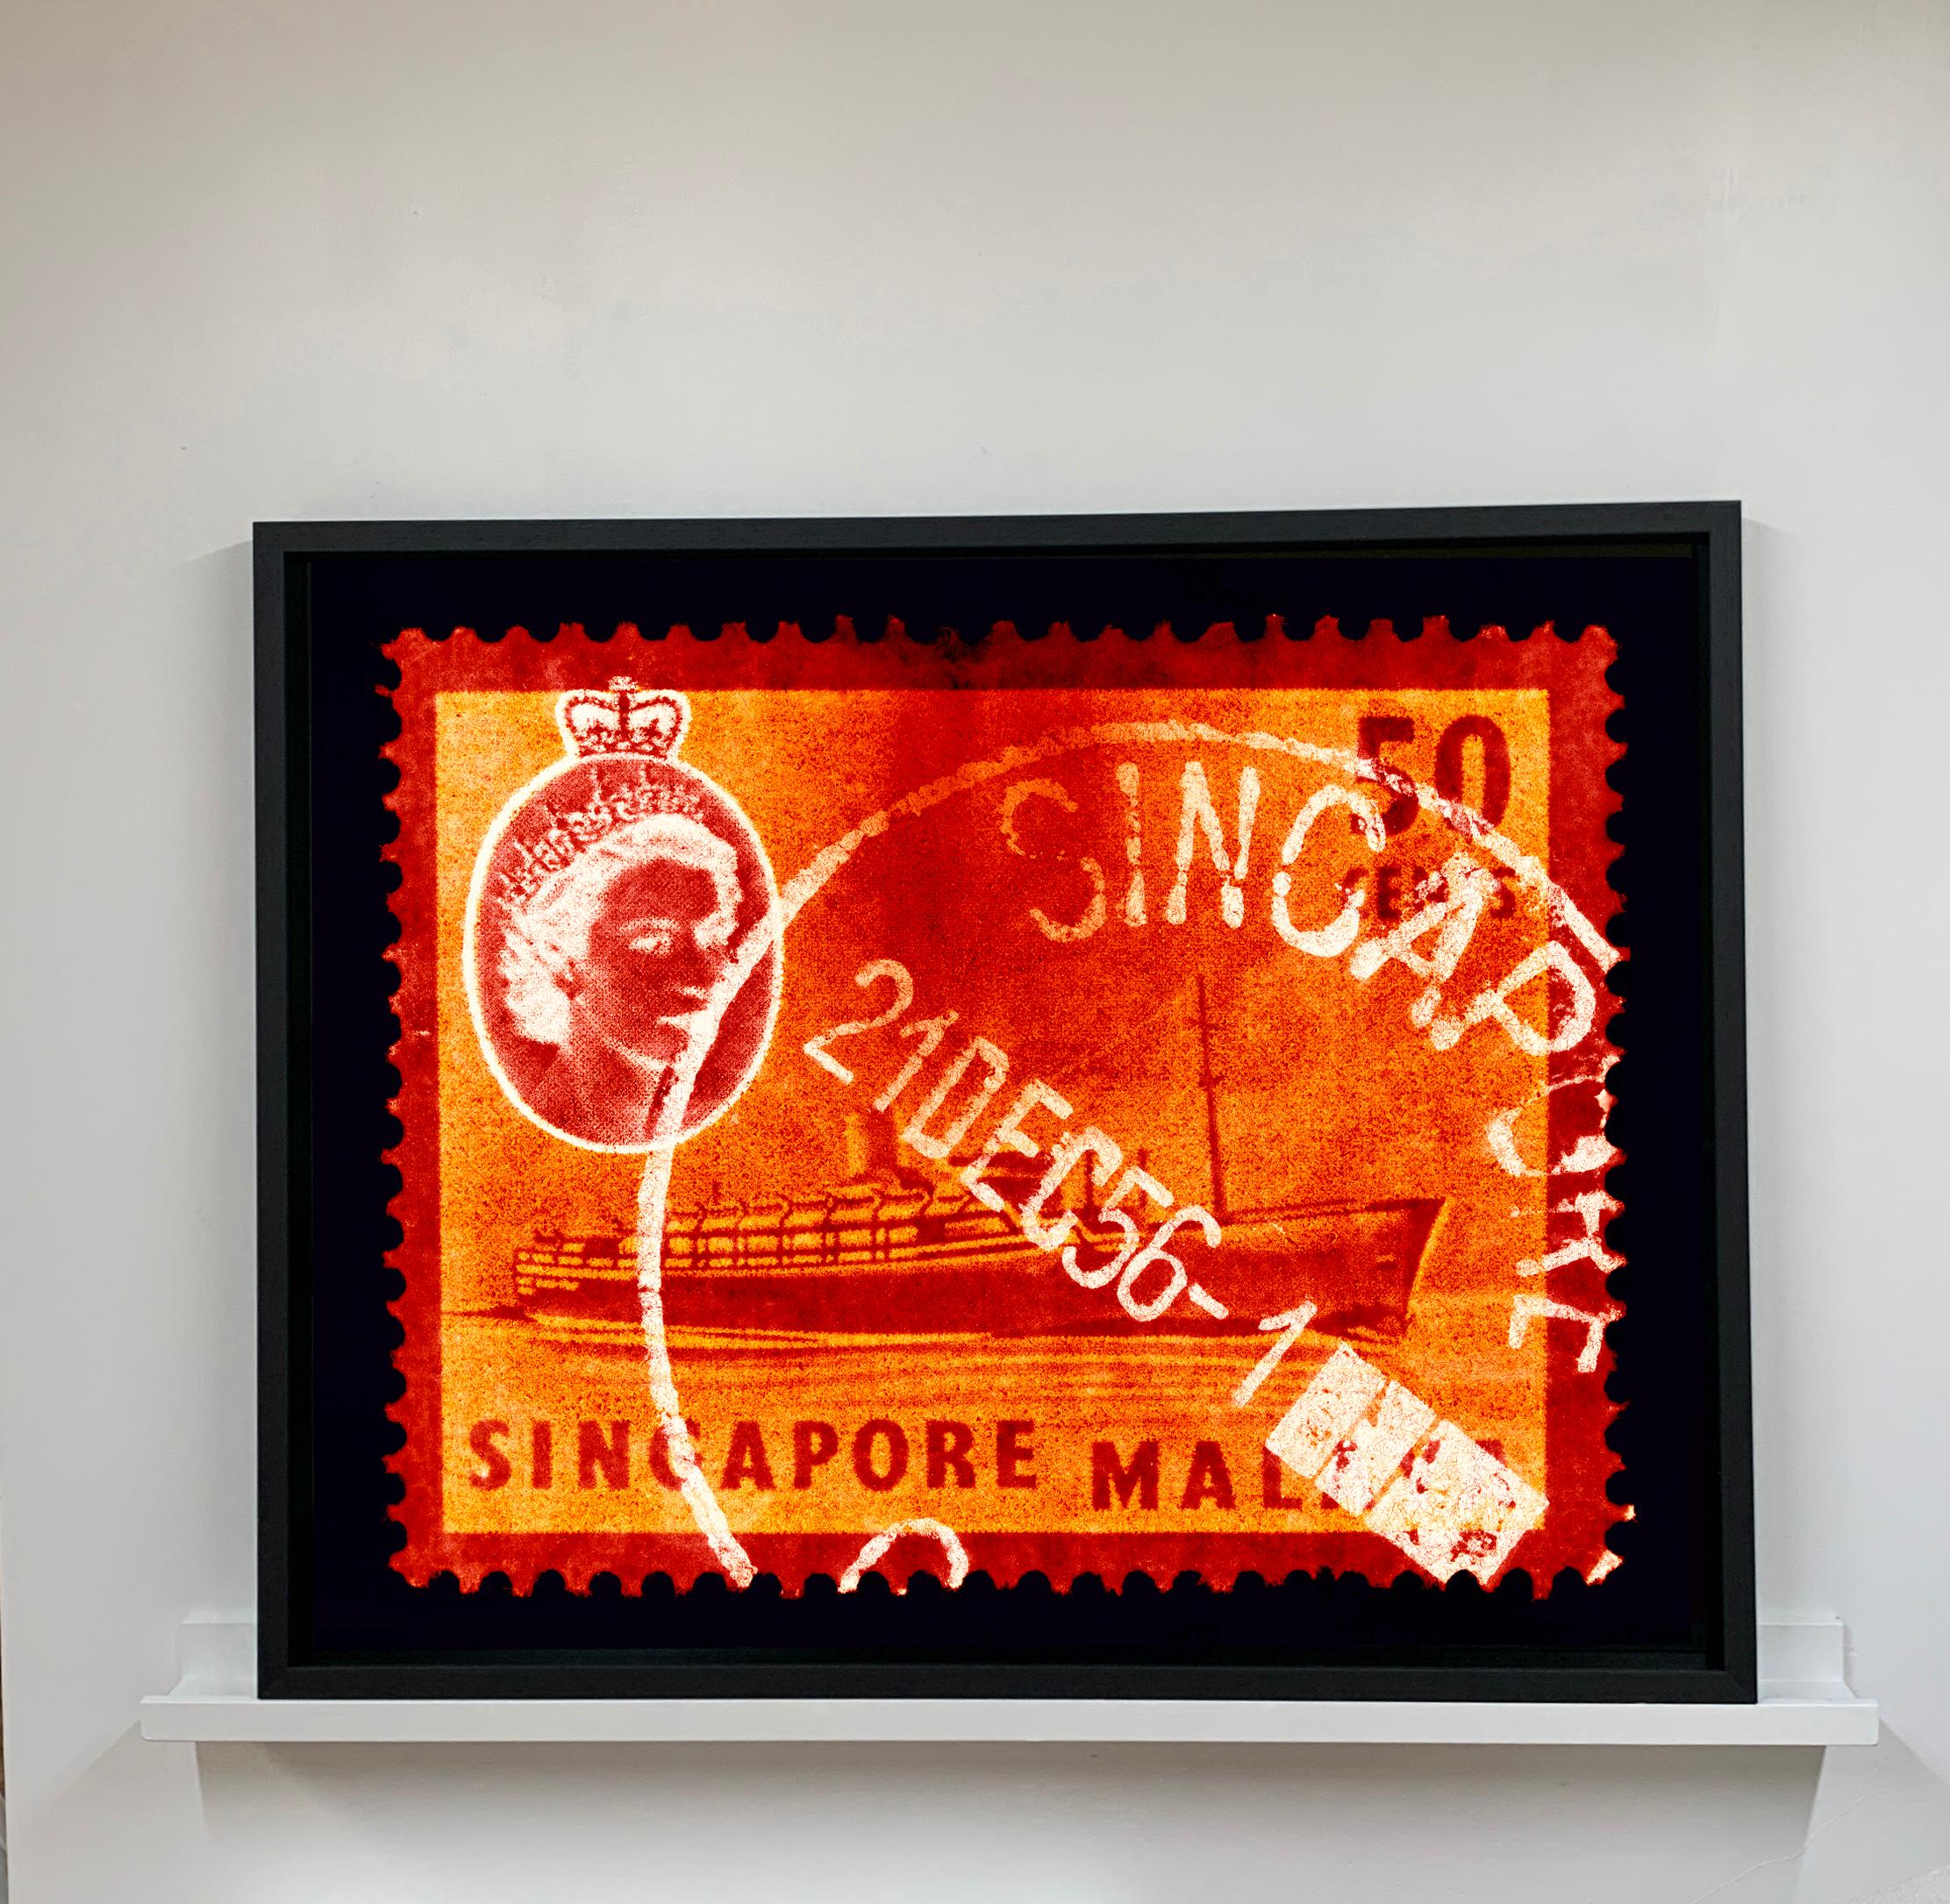 Collection de timbres de Singapour, 50c QEII bateau à vapeur orange - Photo couleur Pop Art - Print de Heidler & Heeps